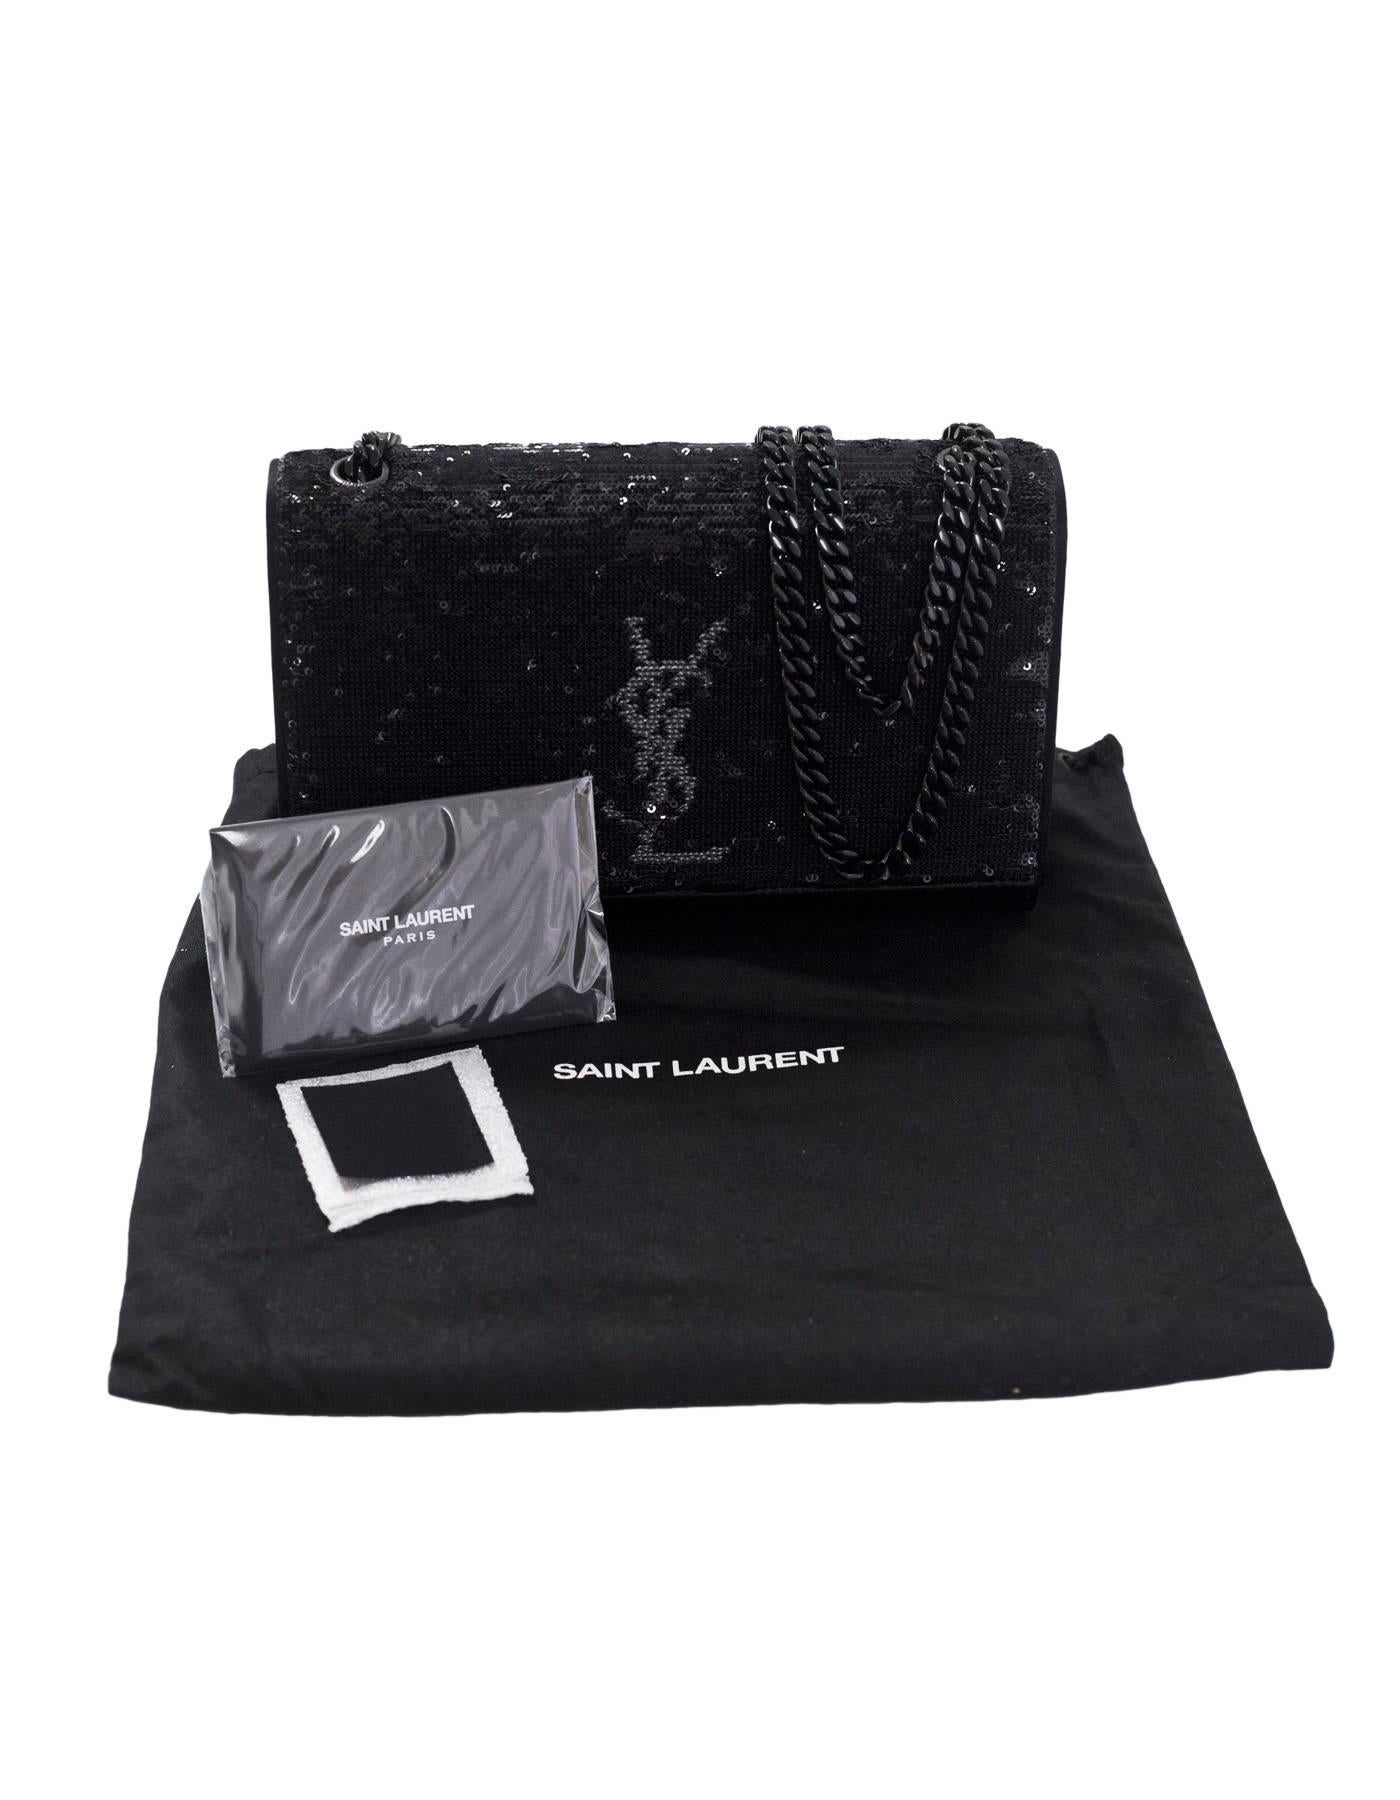 Saint Laurent Black Satin Small Kate Magic Paillettes Sequin Evening Bag 5